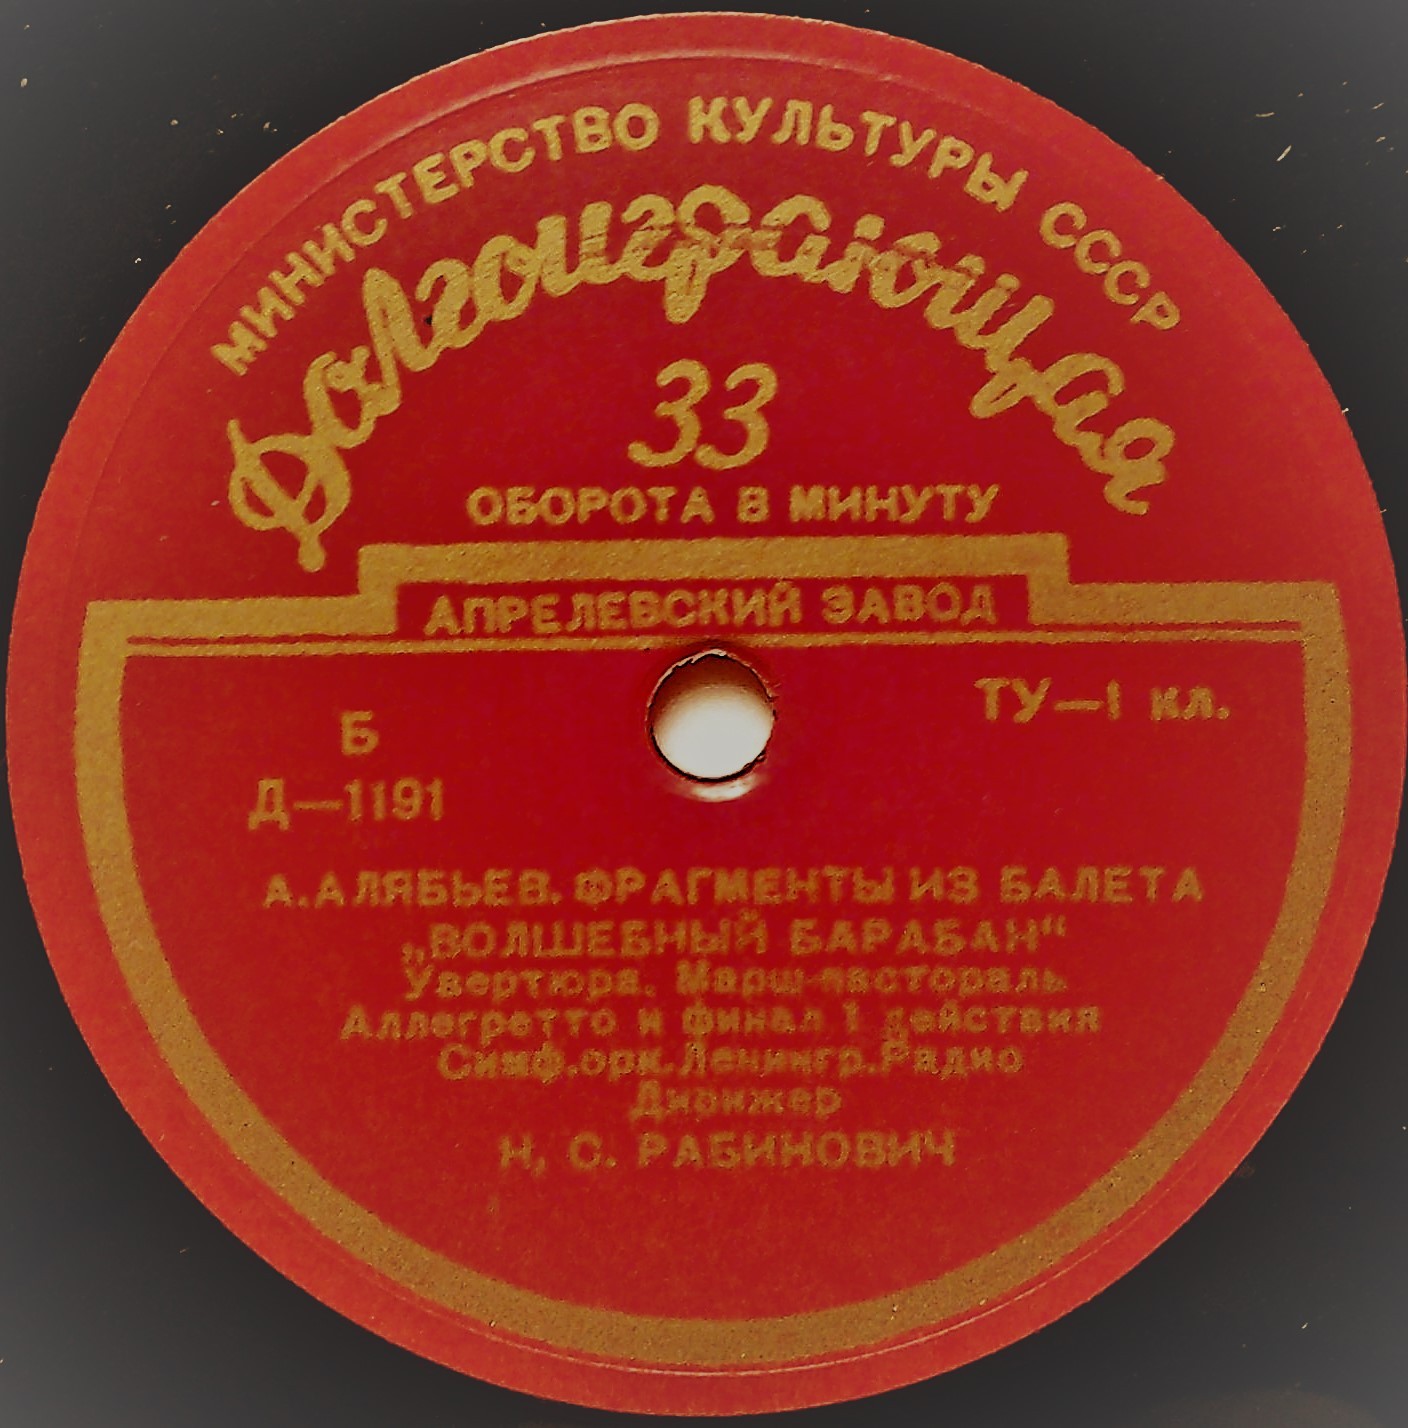 А. АЛЯБЬЕВ (1787-1851). Фрагменты из балета "Волшебный барабан"